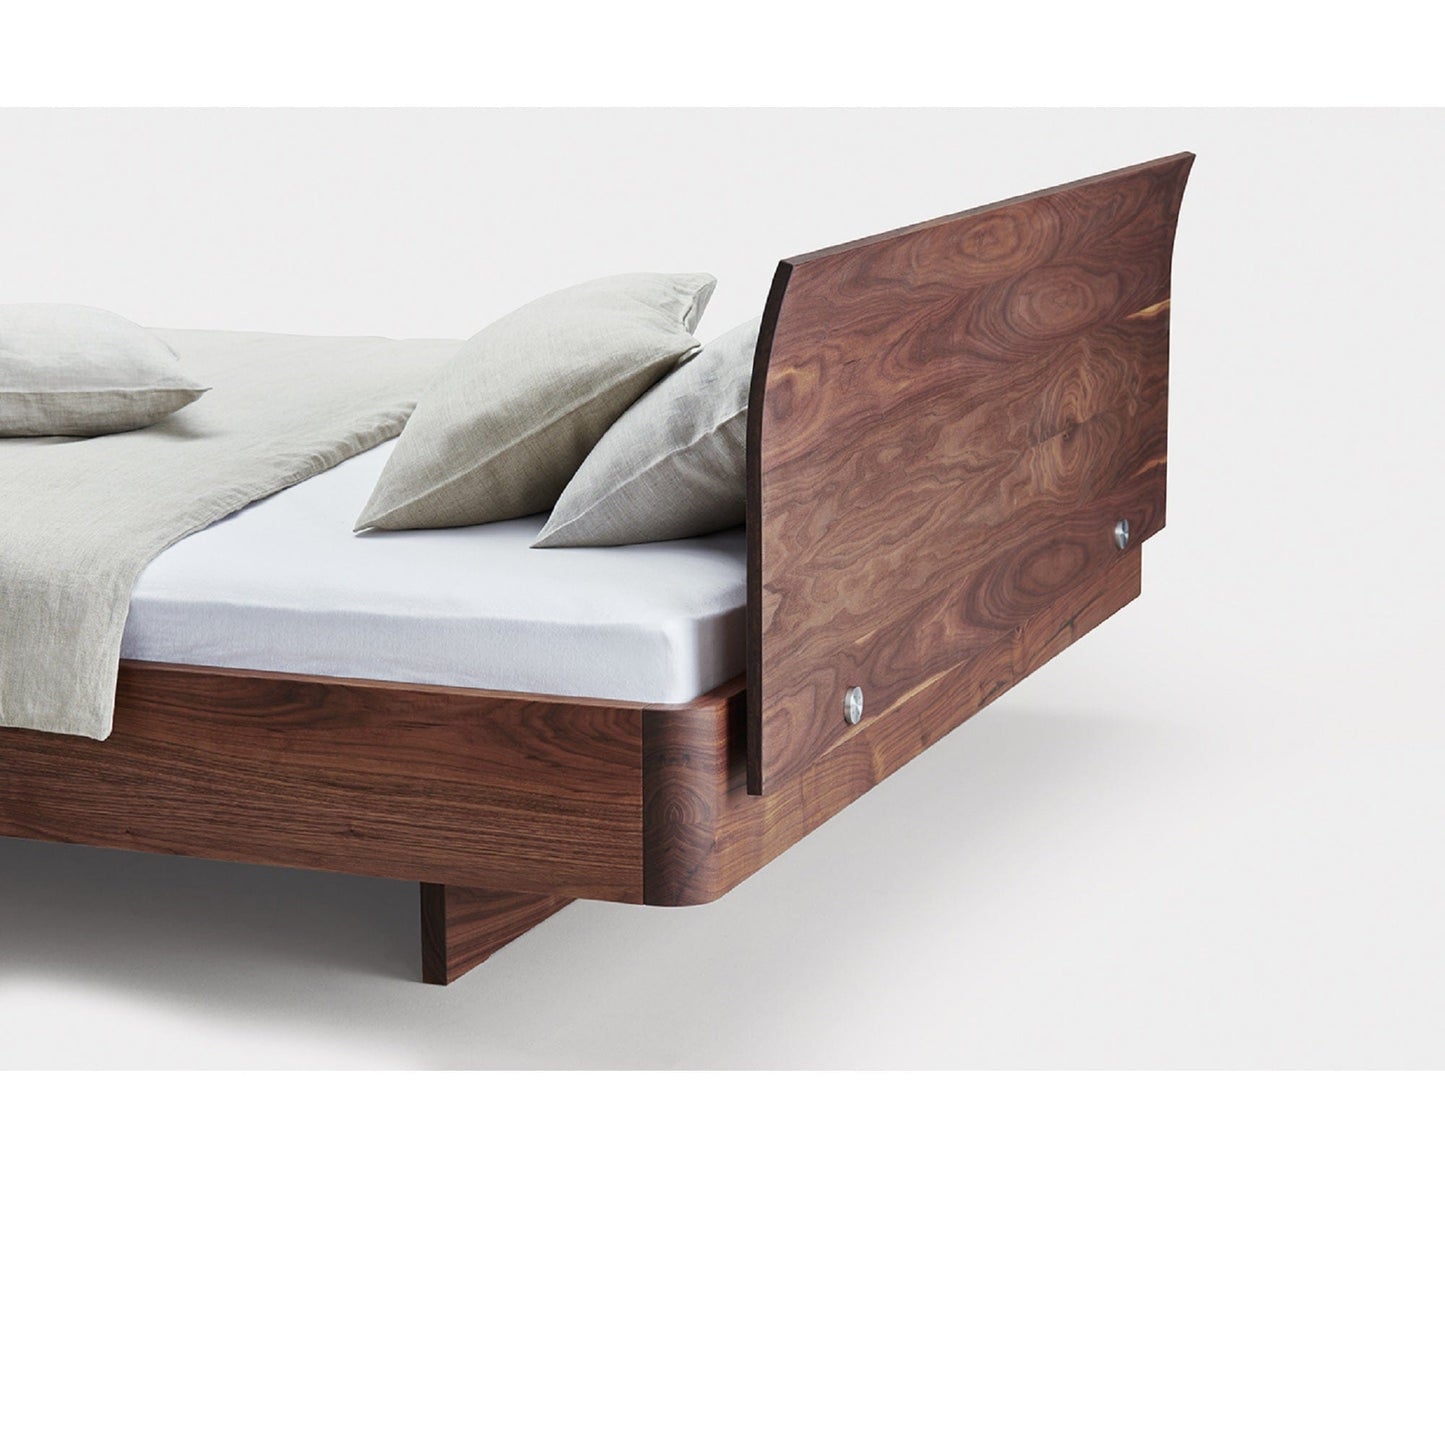 Holzmanufaktur Outlet Bett COM:CI mit Holzkufen und Rückenlehne, Nussbaum 140x200 cm